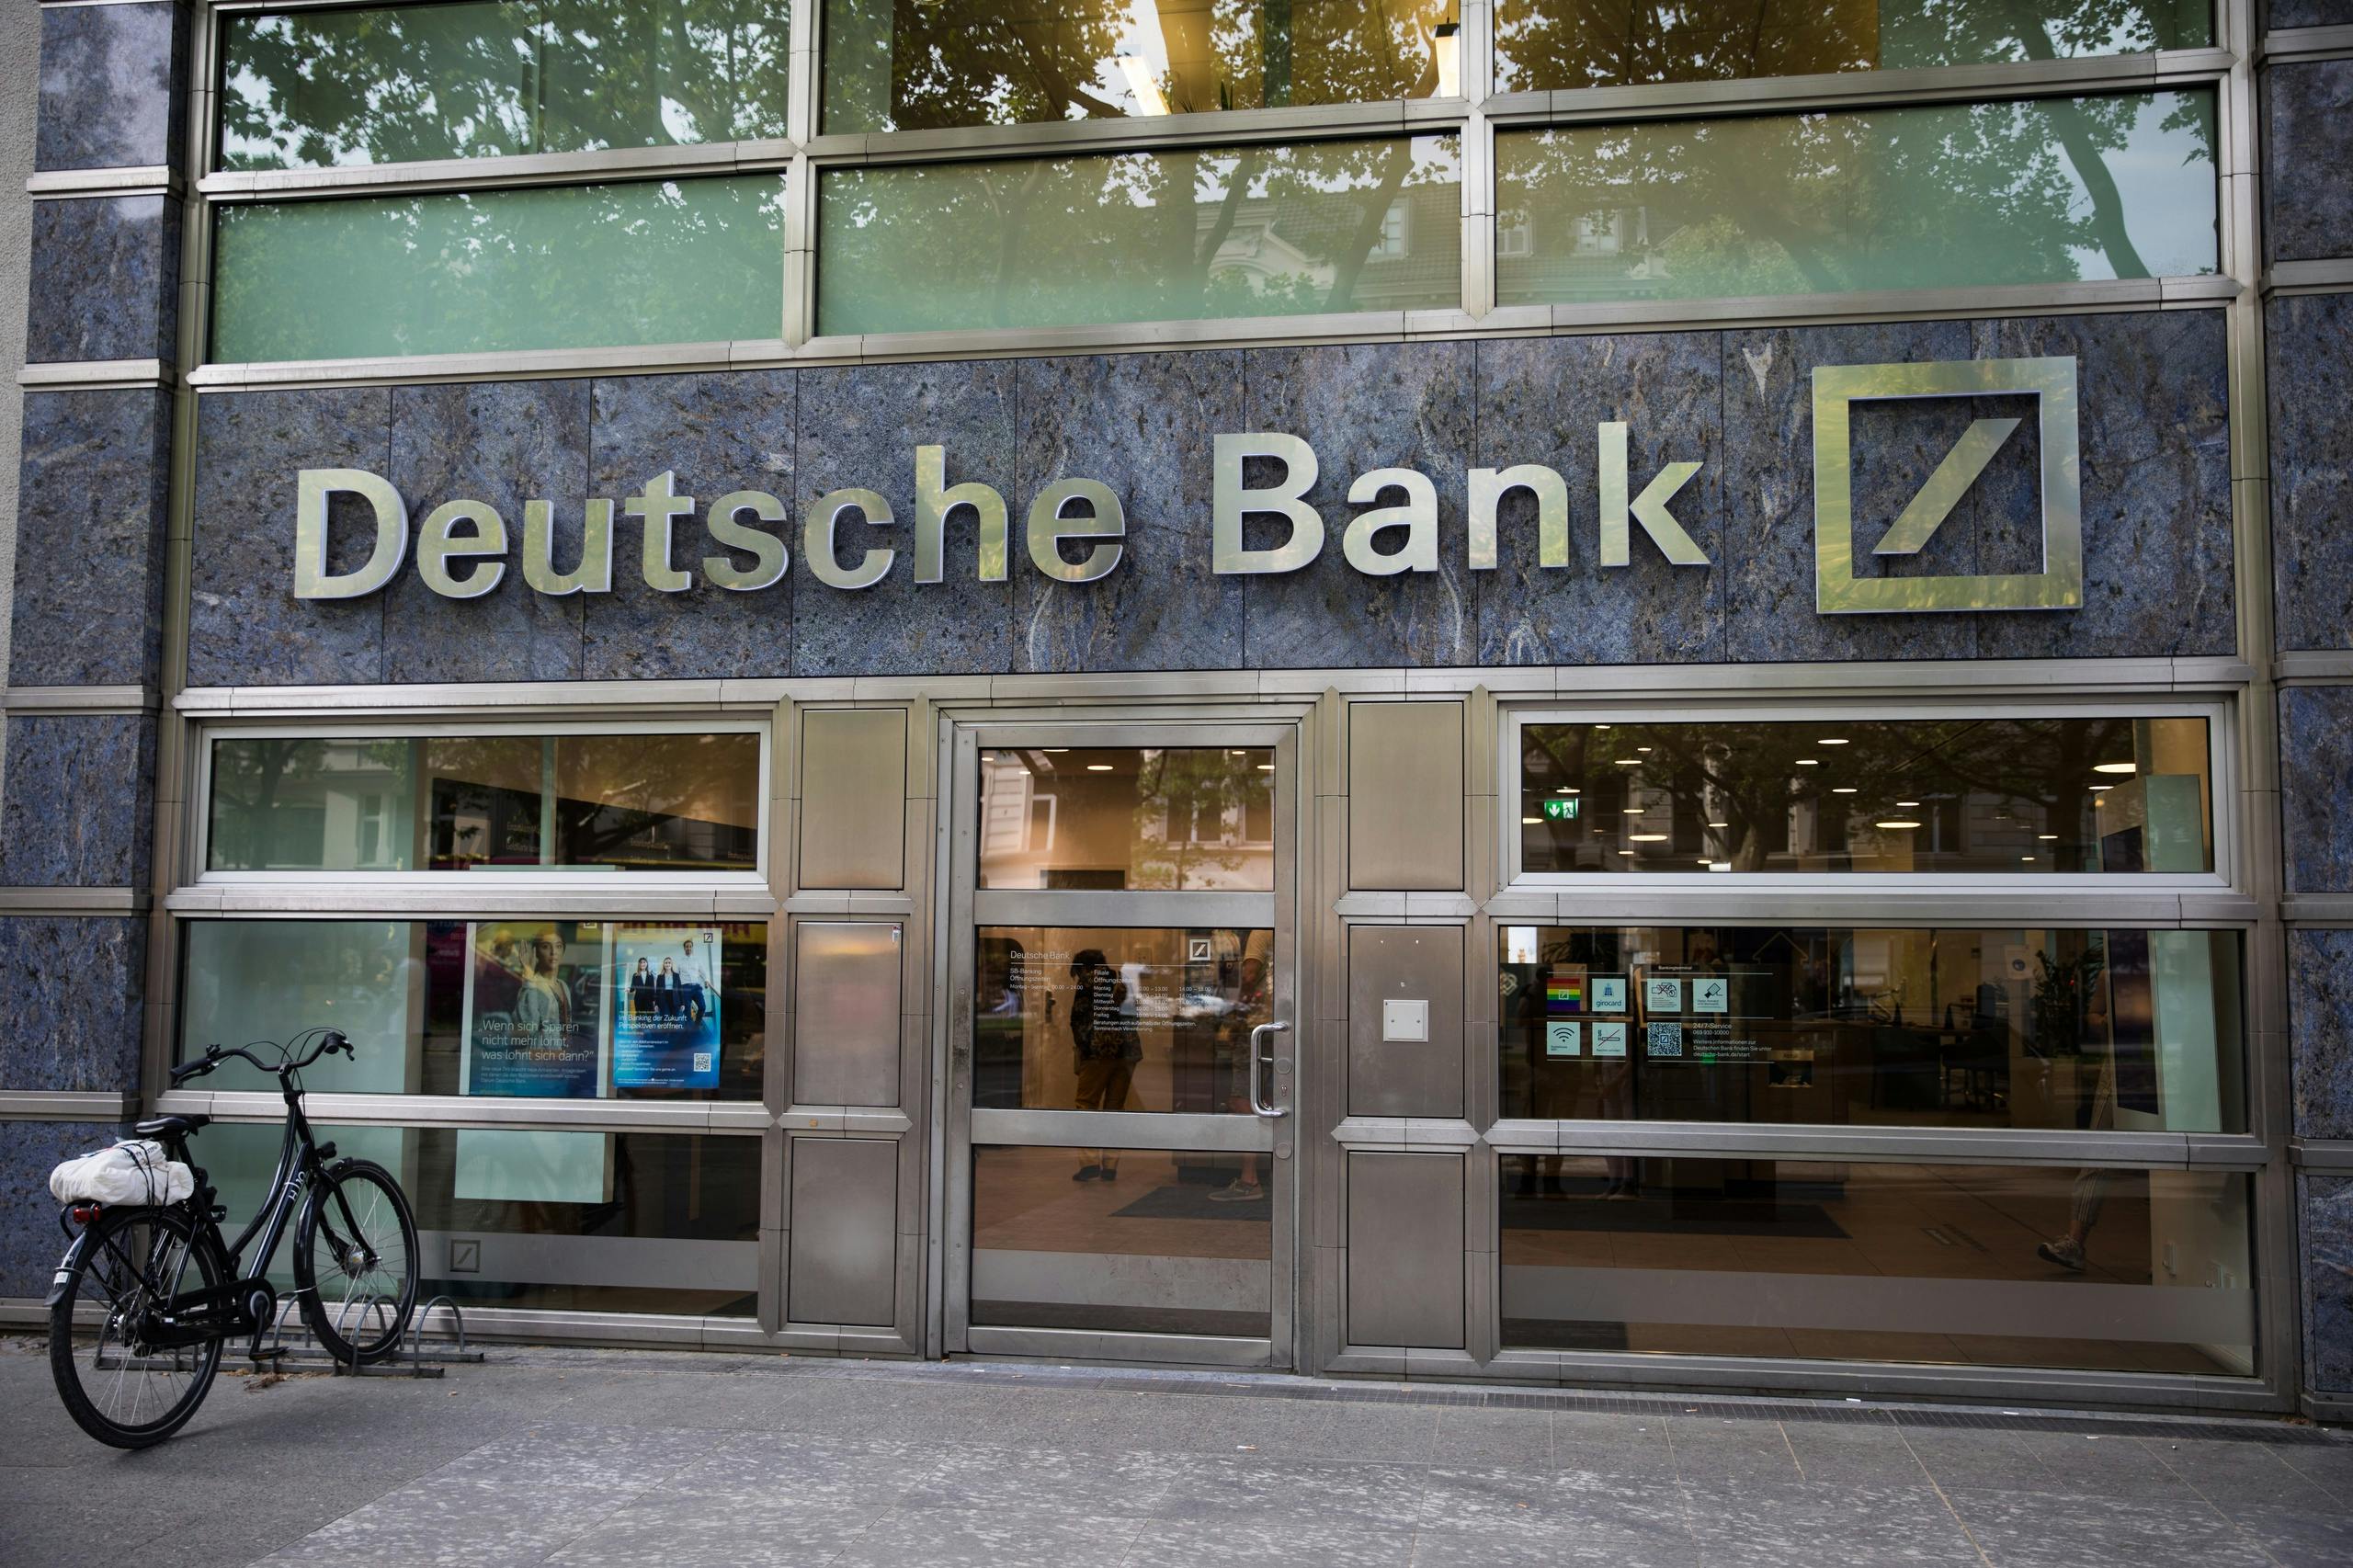 Chef Deutsche Bank: Deutschland gut auf die Gaskrise vorbereitet